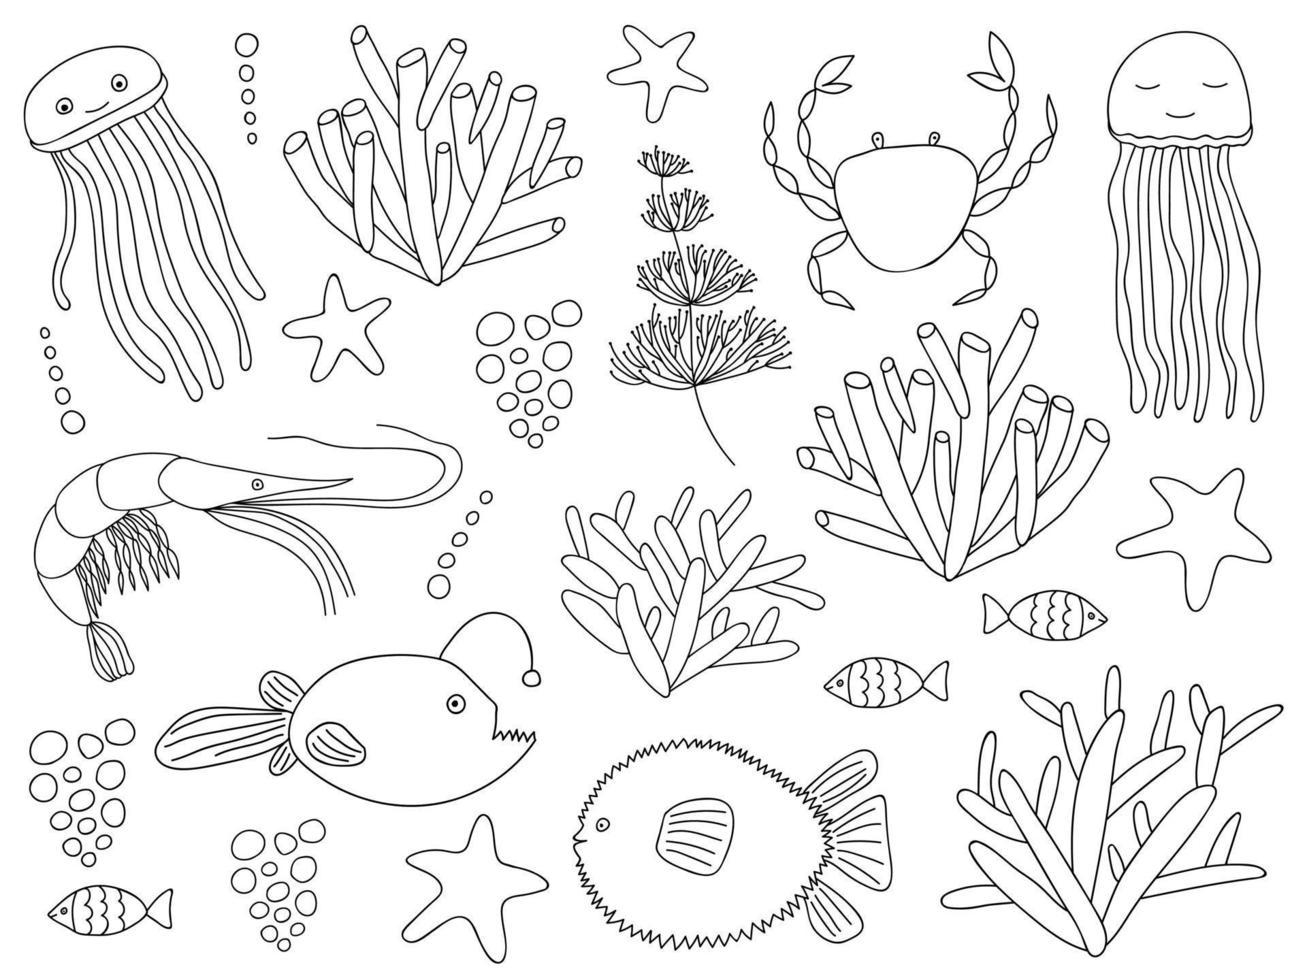 grande rabisco mar elementos definir. oceano, mar vida animal e plantar definir. vetor embaixo da agua objetos. medusa, bola peixe, recife peixe, camarão, caranguejo, tamboril, coral, algas marinhas, algas marinhas, estrela do Mar.